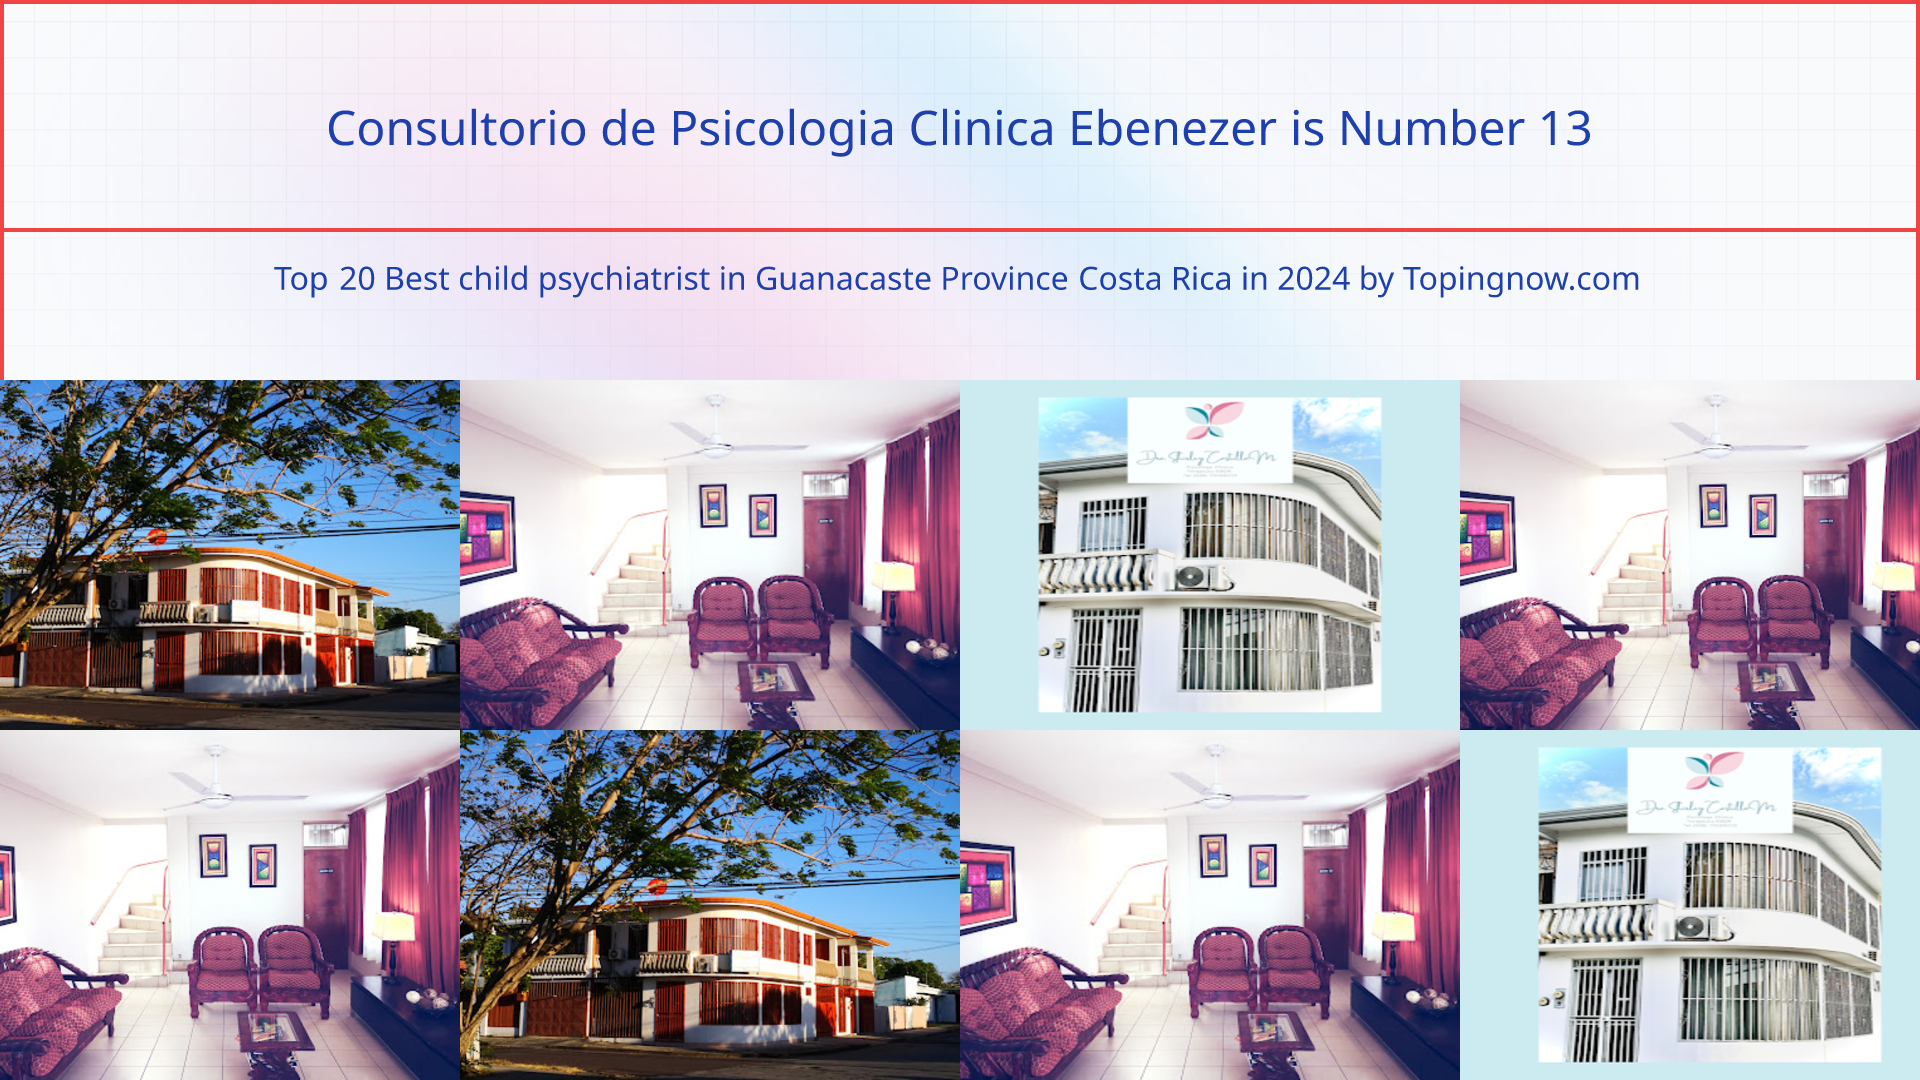 Consultorio de Psicologia Clinica Ebenezer: Top 20 Best child psychiatrist in Guanacaste Province Costa Rica in 2024